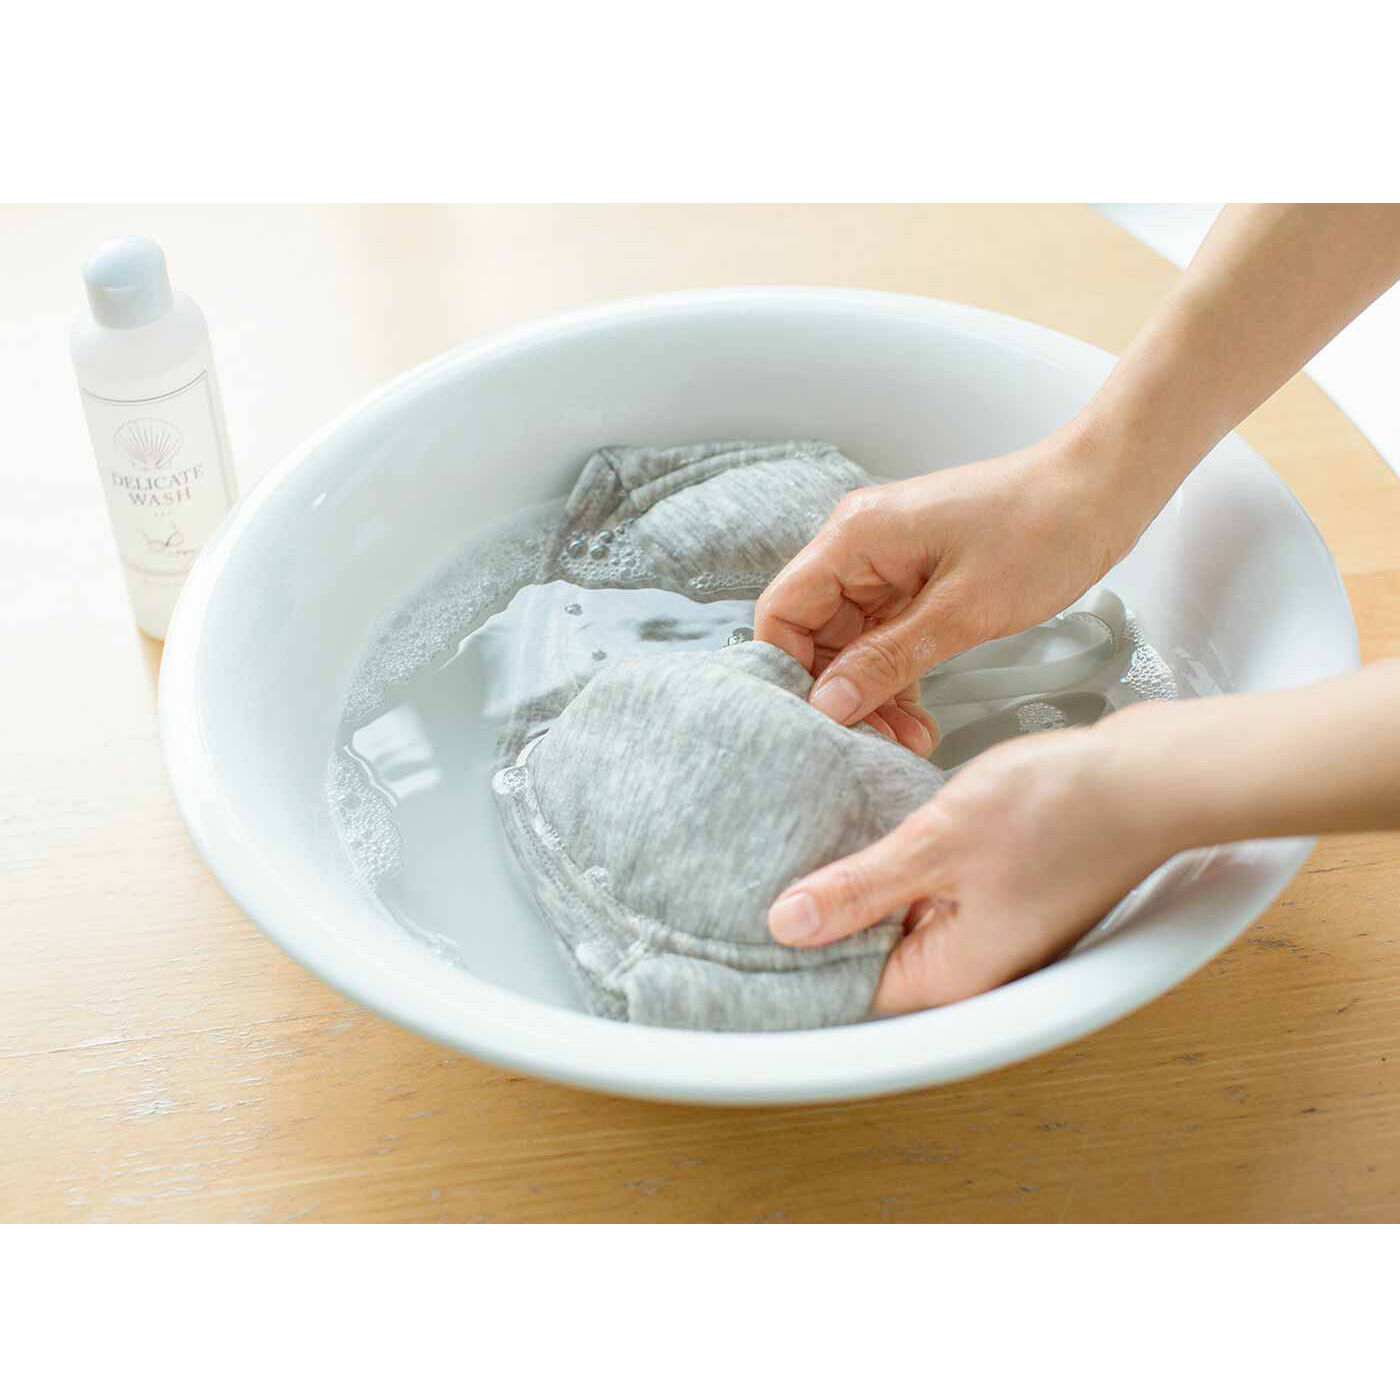 flufeel|ホタテの貝殻生まれ つけ置き洗いですっきりきれい ランジェリー用洗剤の会|ブラジャーやショーツにも使用できます。